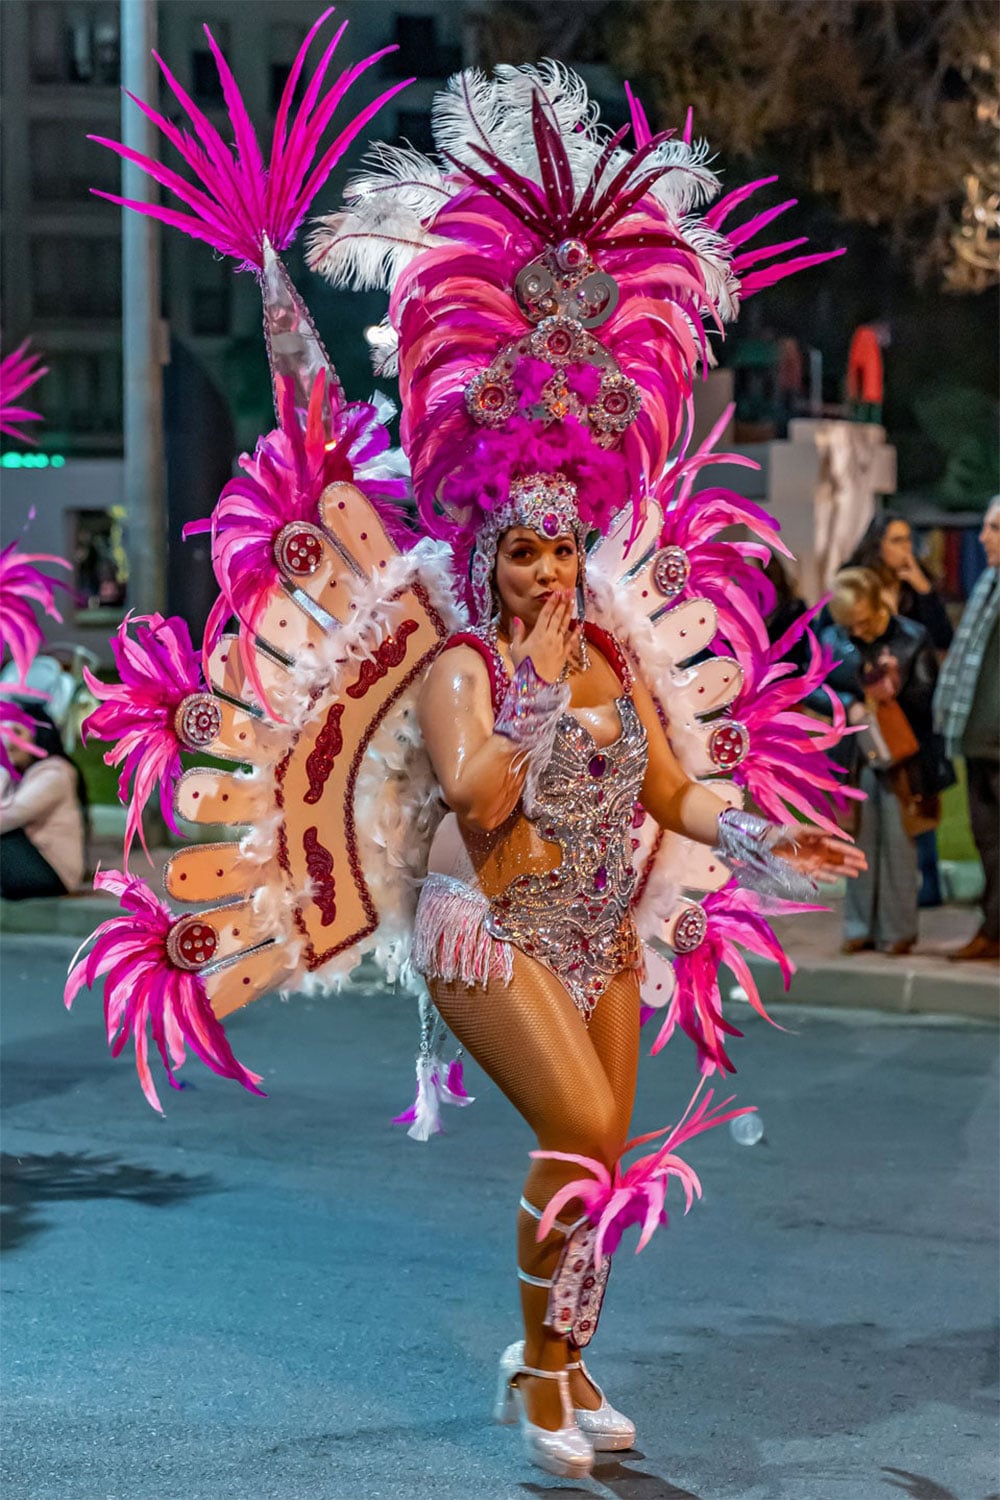 Samba dancer at the carnival parade